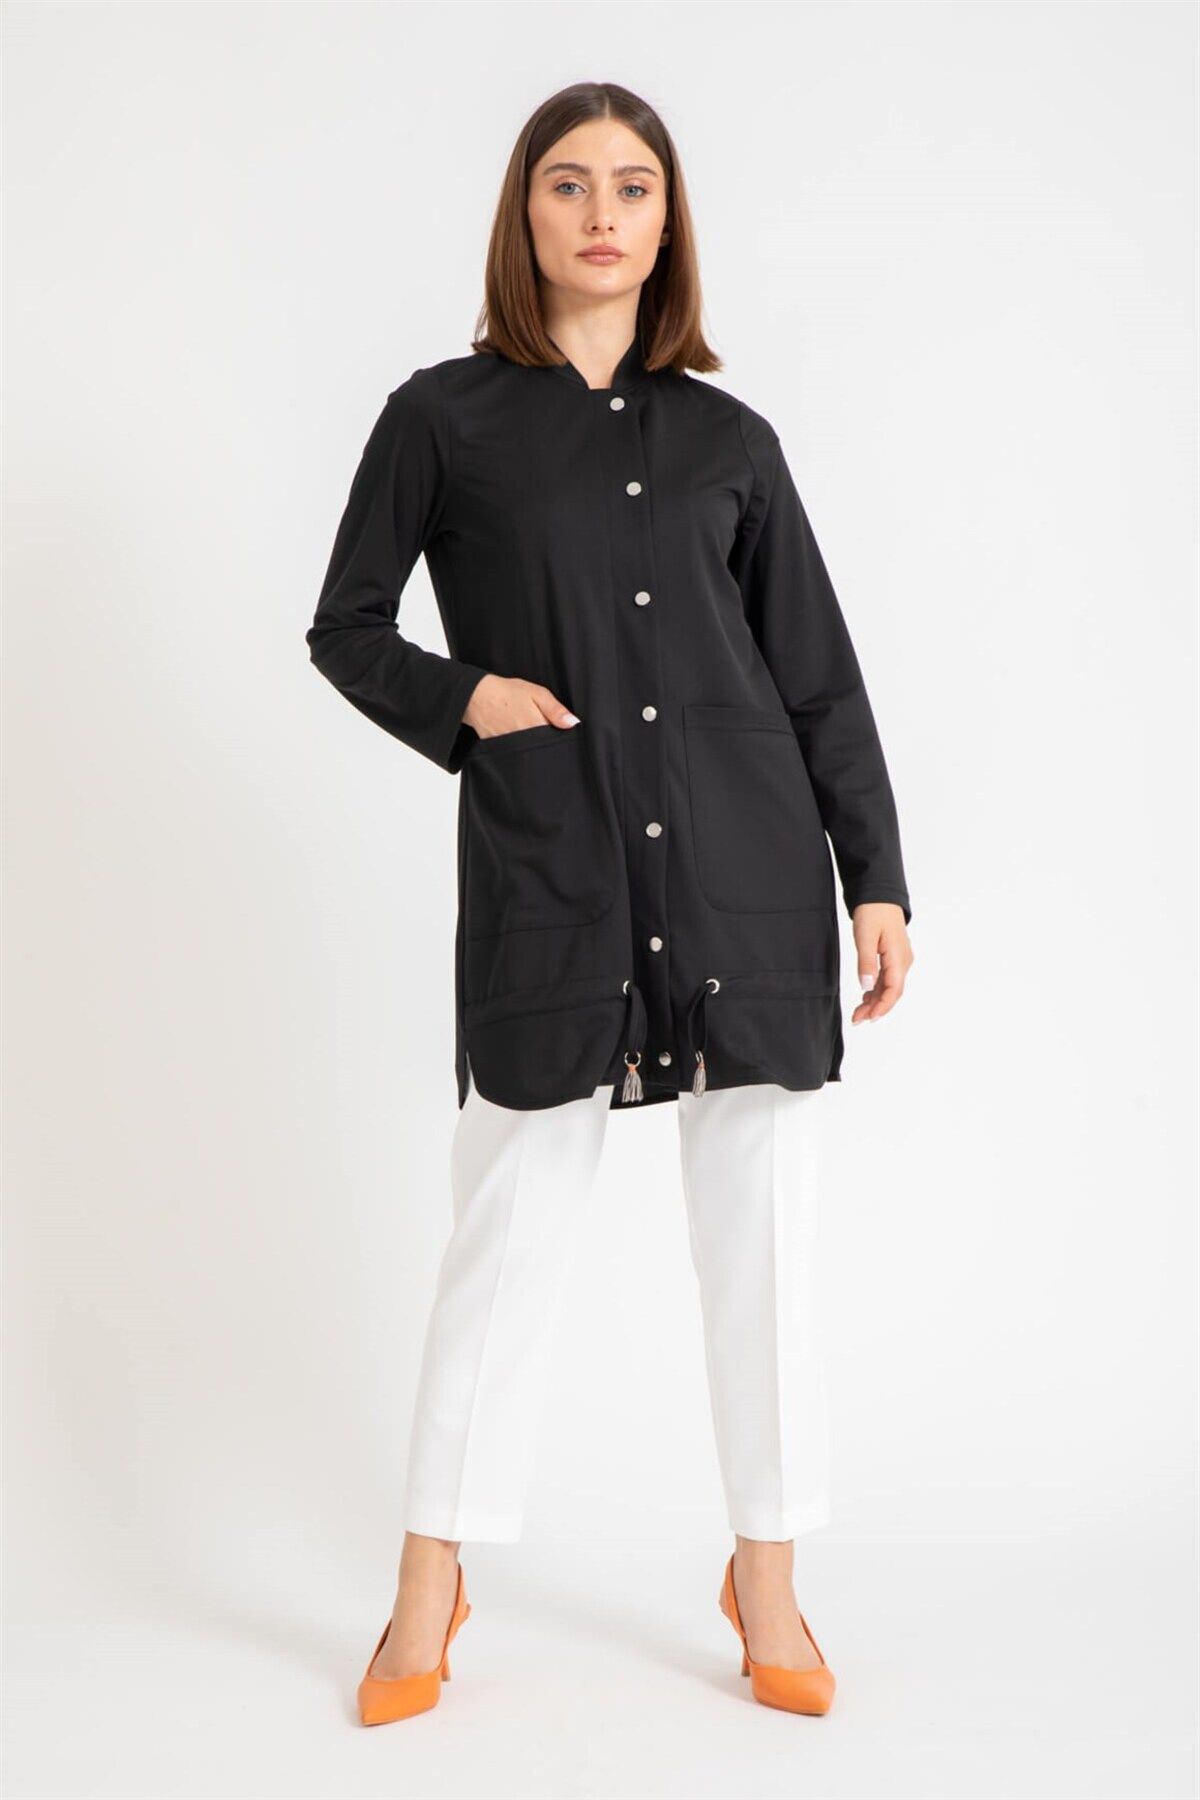 Esswaap Önü Çıt Çıt Kapamalı Büzgü Detaylı Giy Çık Tunik Ceket Siyah